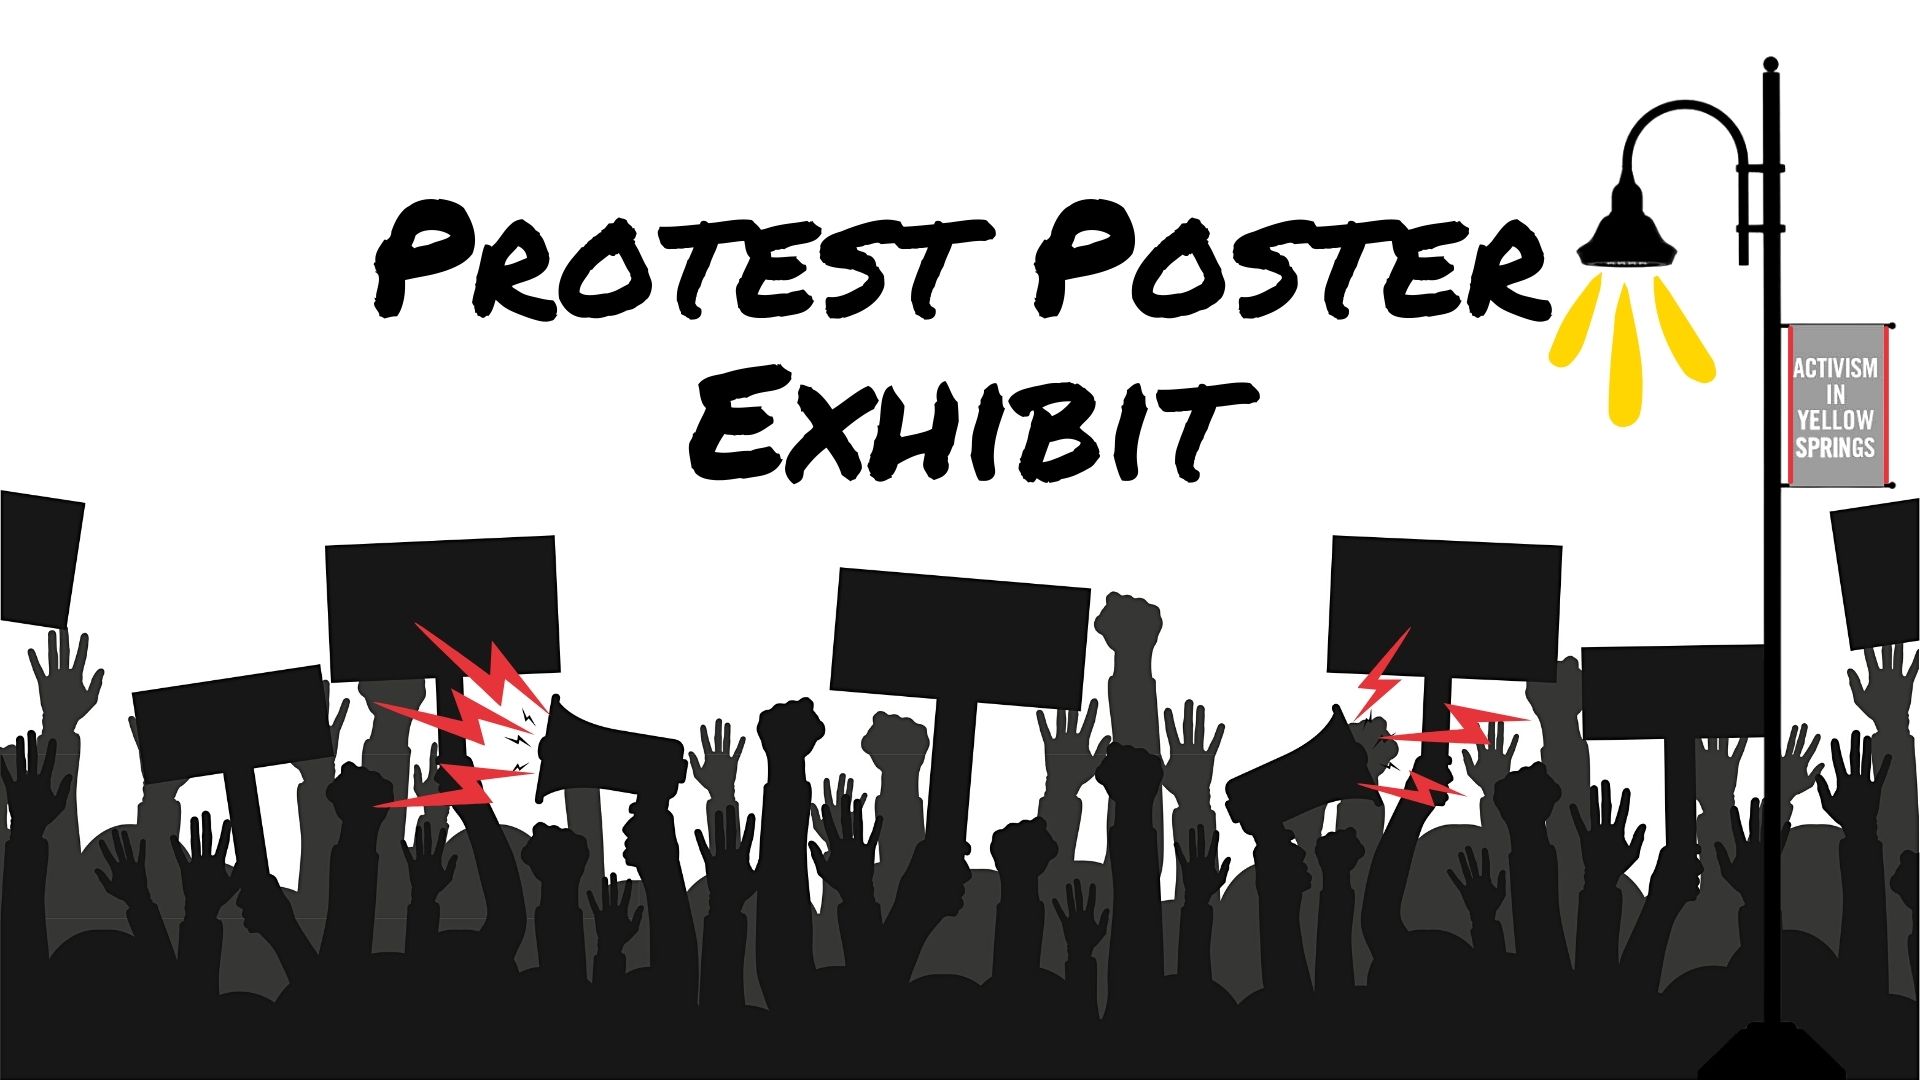 Protest Poster Exhibit